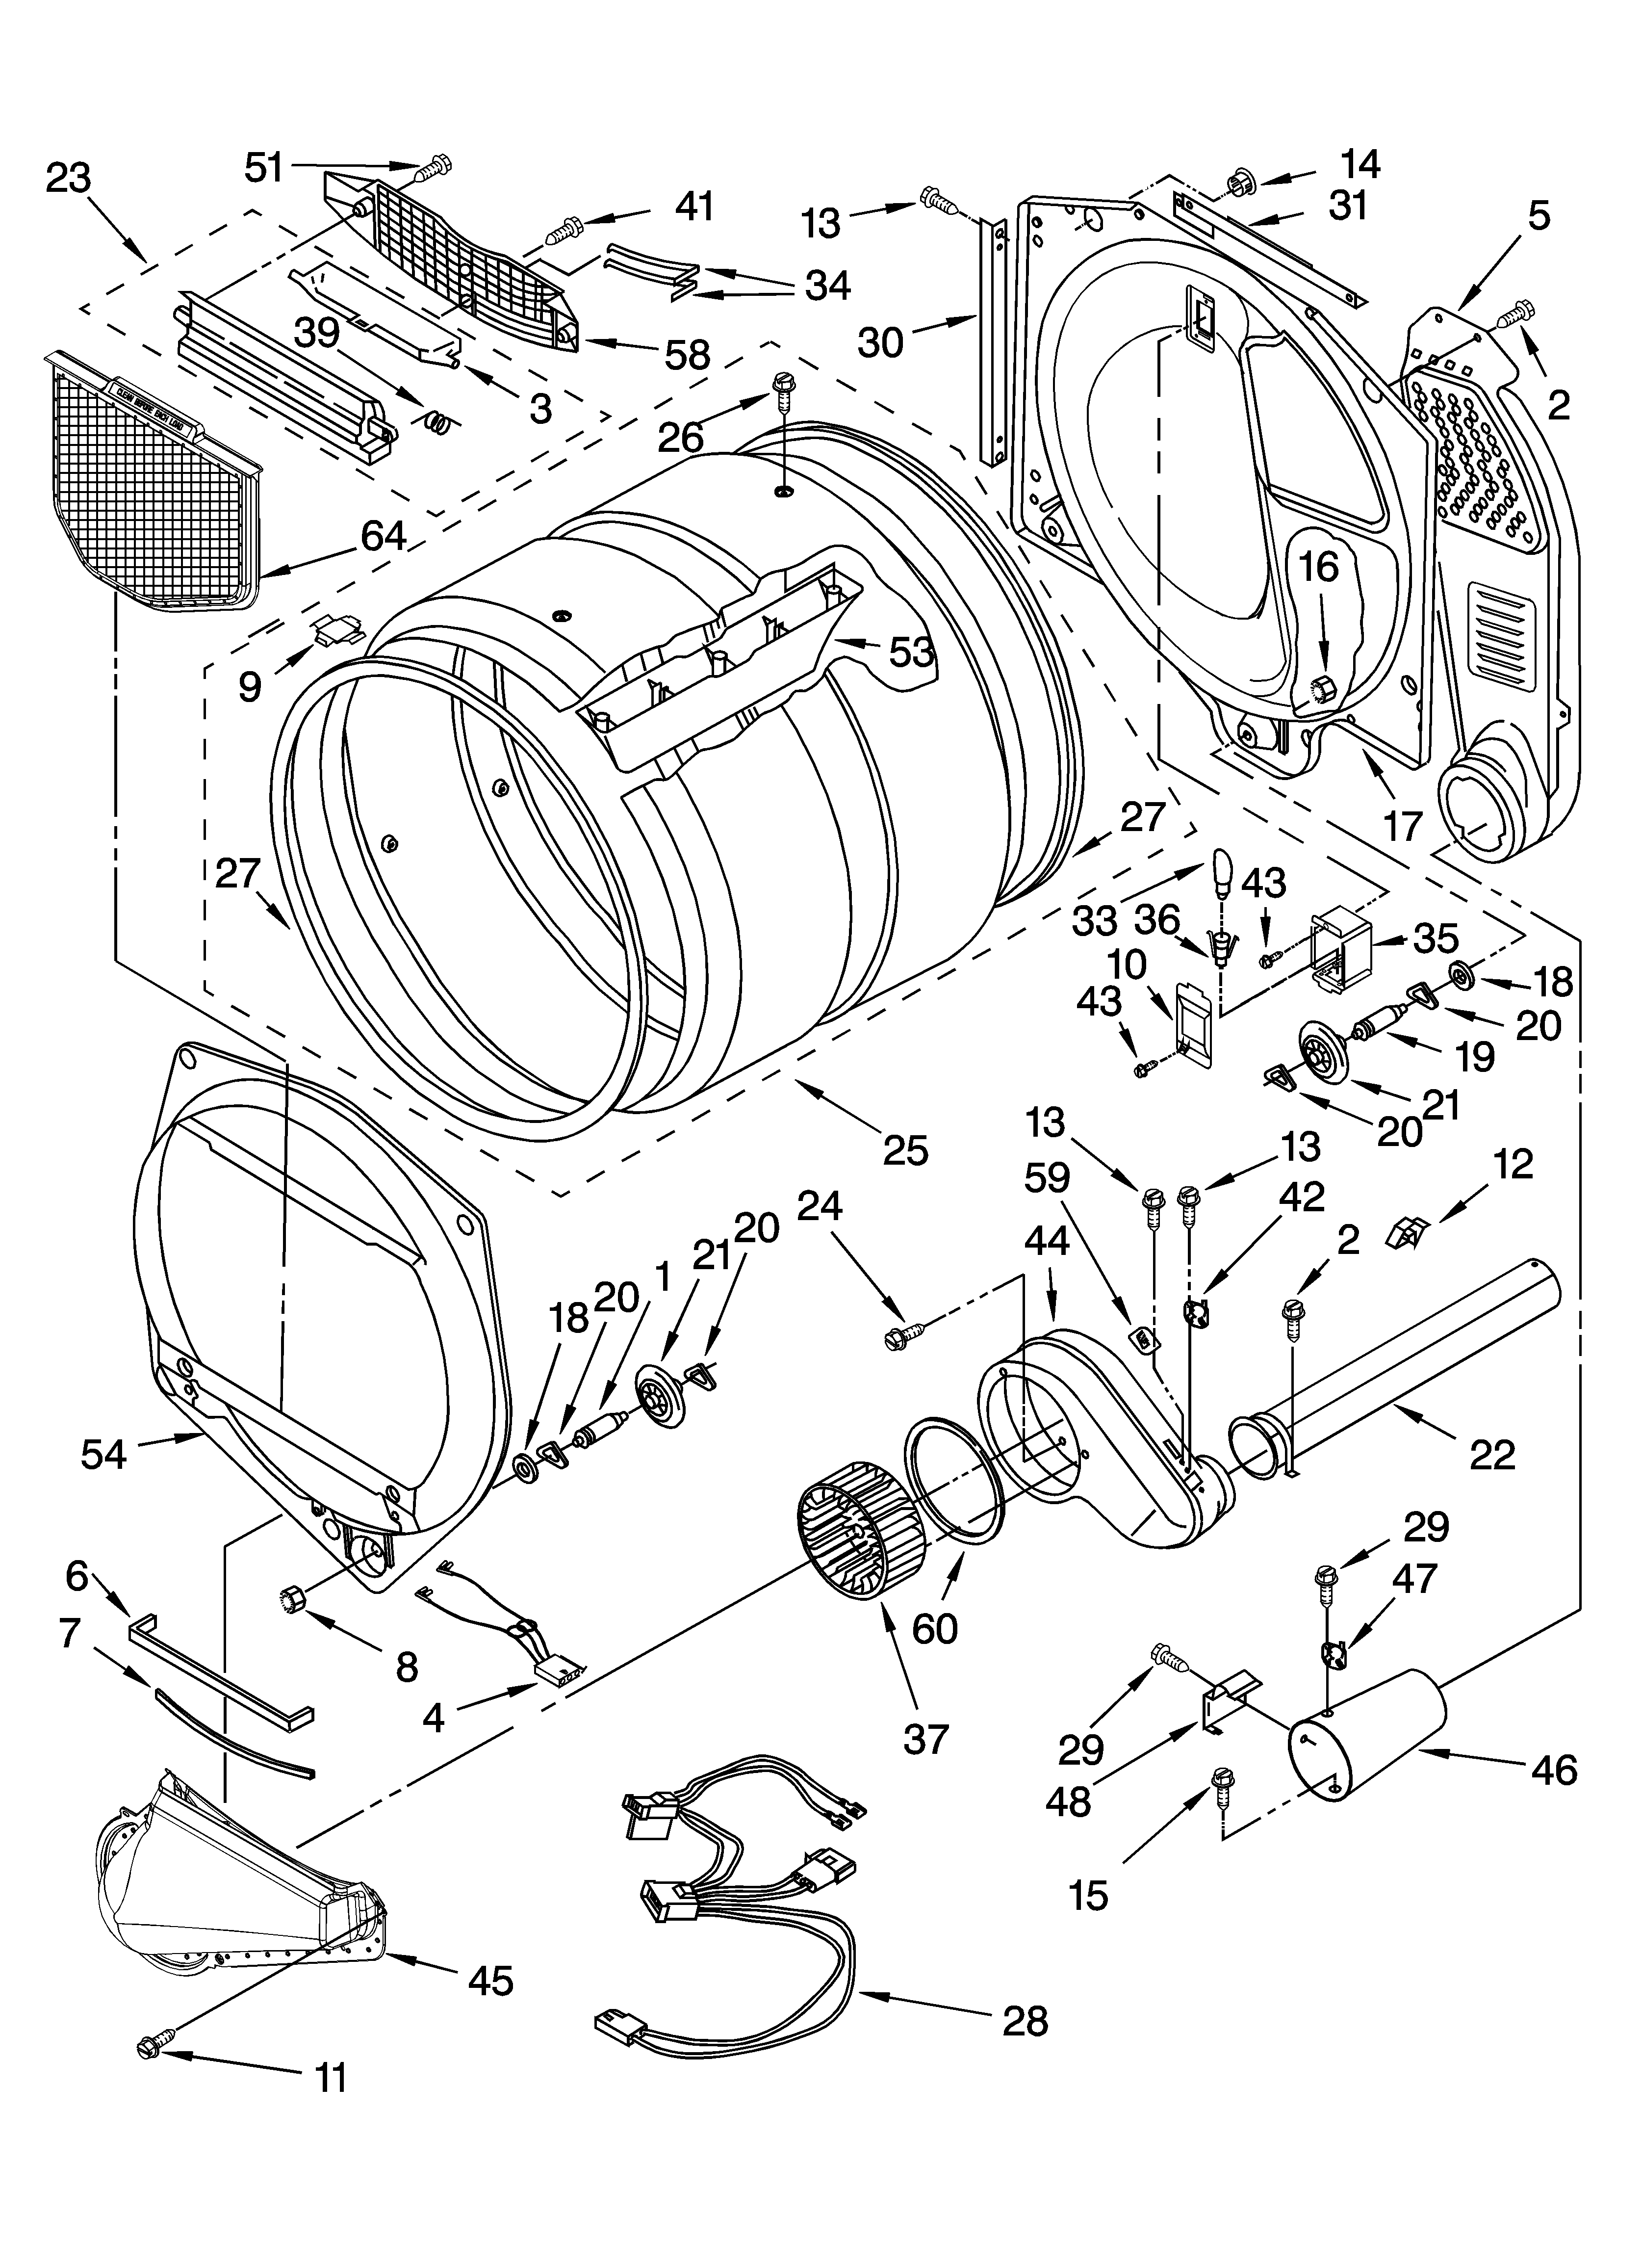 Kenmore Elite Dryer Parts Diagram